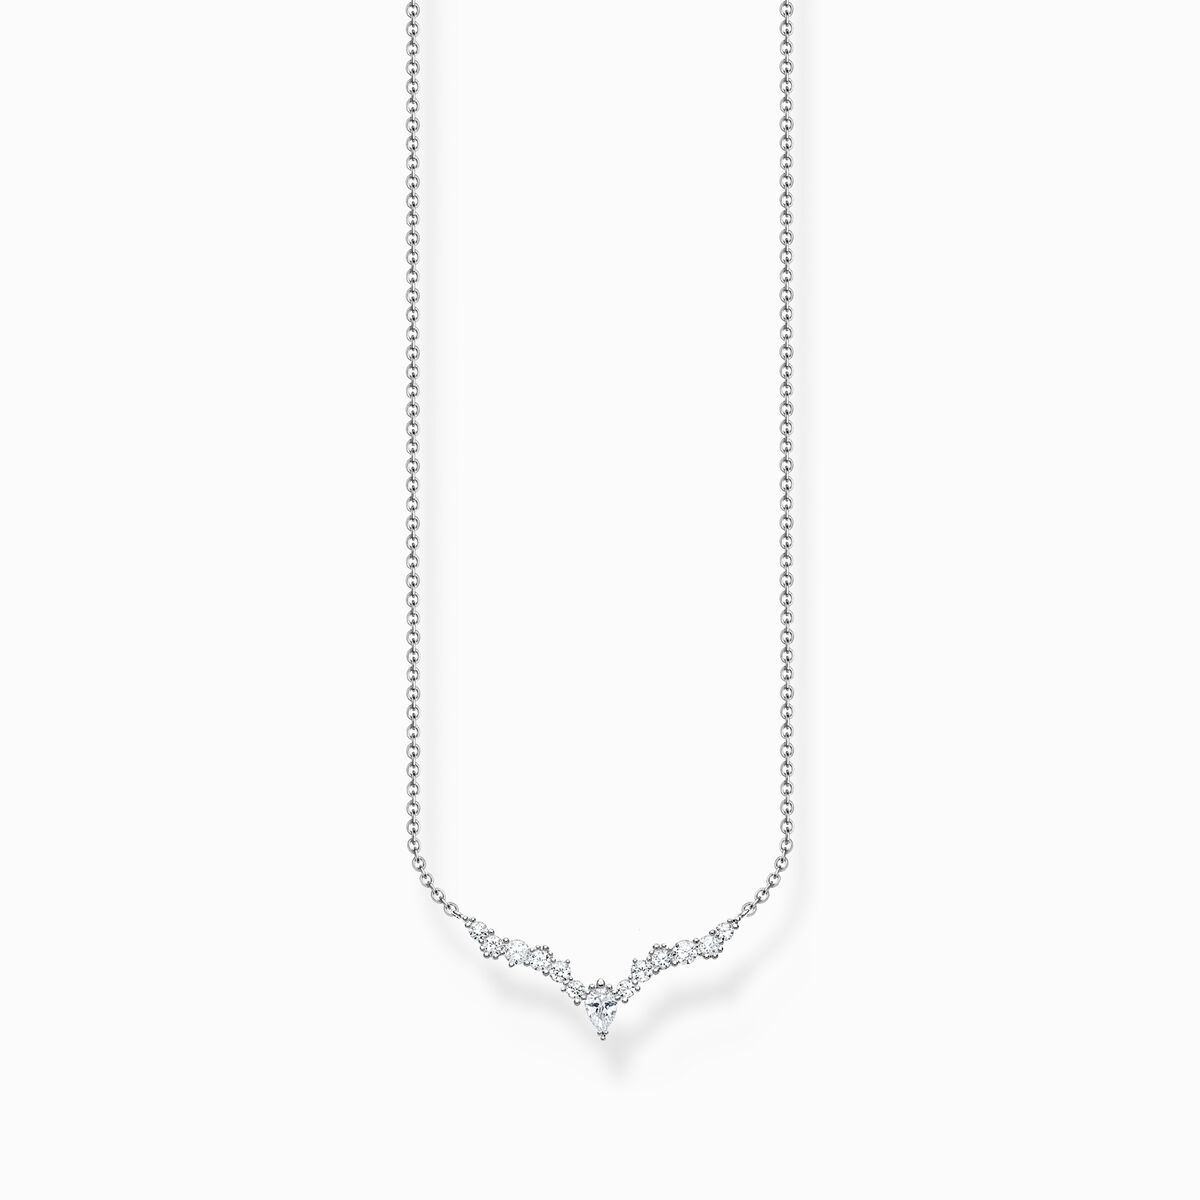 Halskette mit weißen Zirkonia-Steinen, Silber | SABO THOMAS